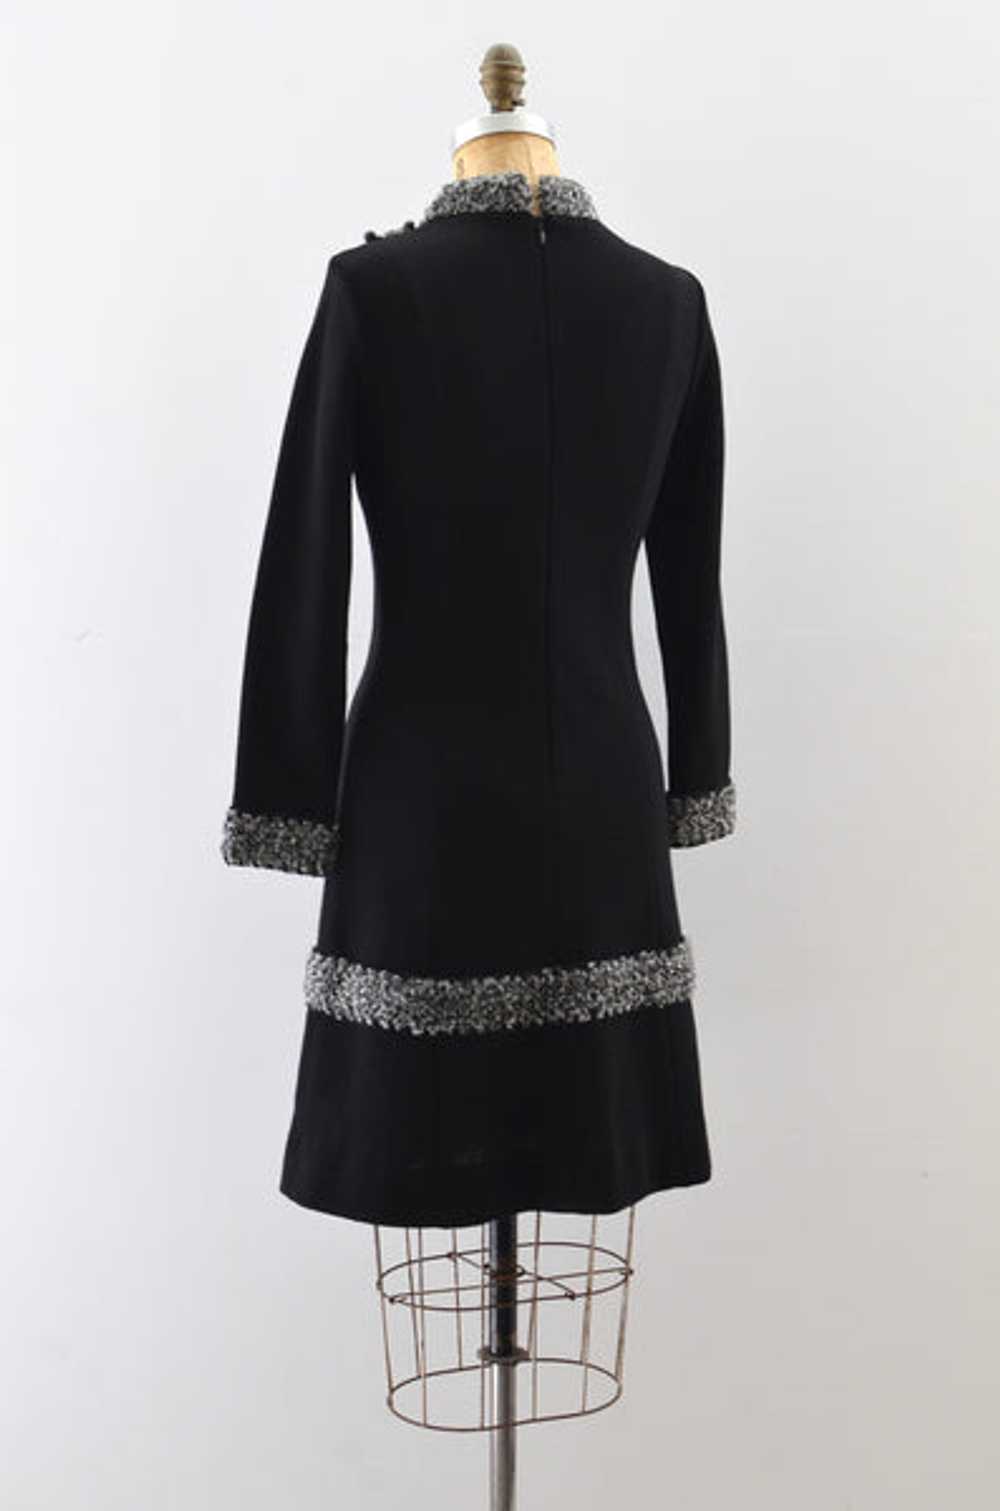 Vintage 1960s Black Knit Dress - image 3